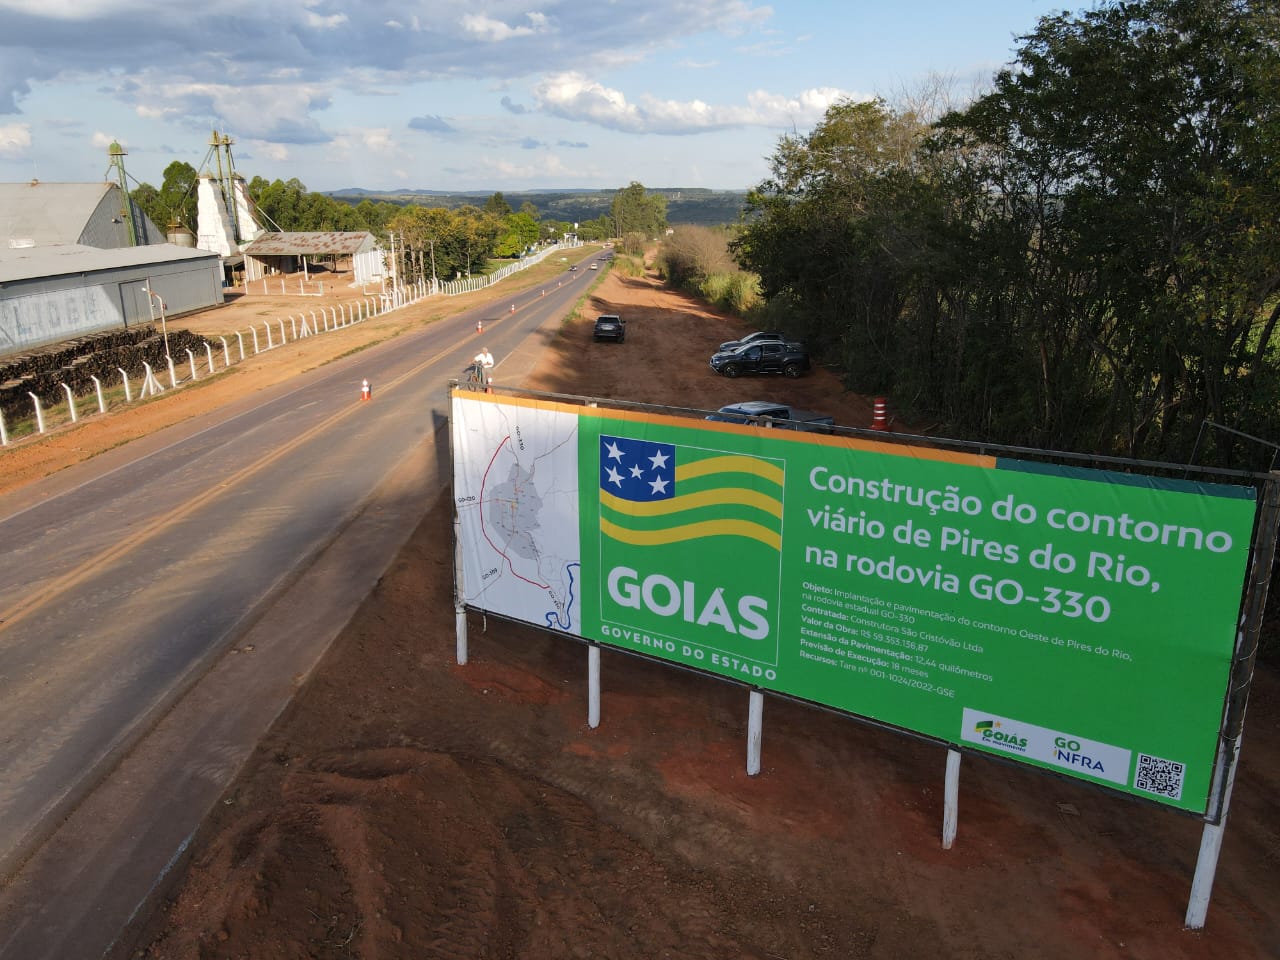 Goinfra lança obras de construção do contorno viário de Pires do Rio, no Sudeste goiano